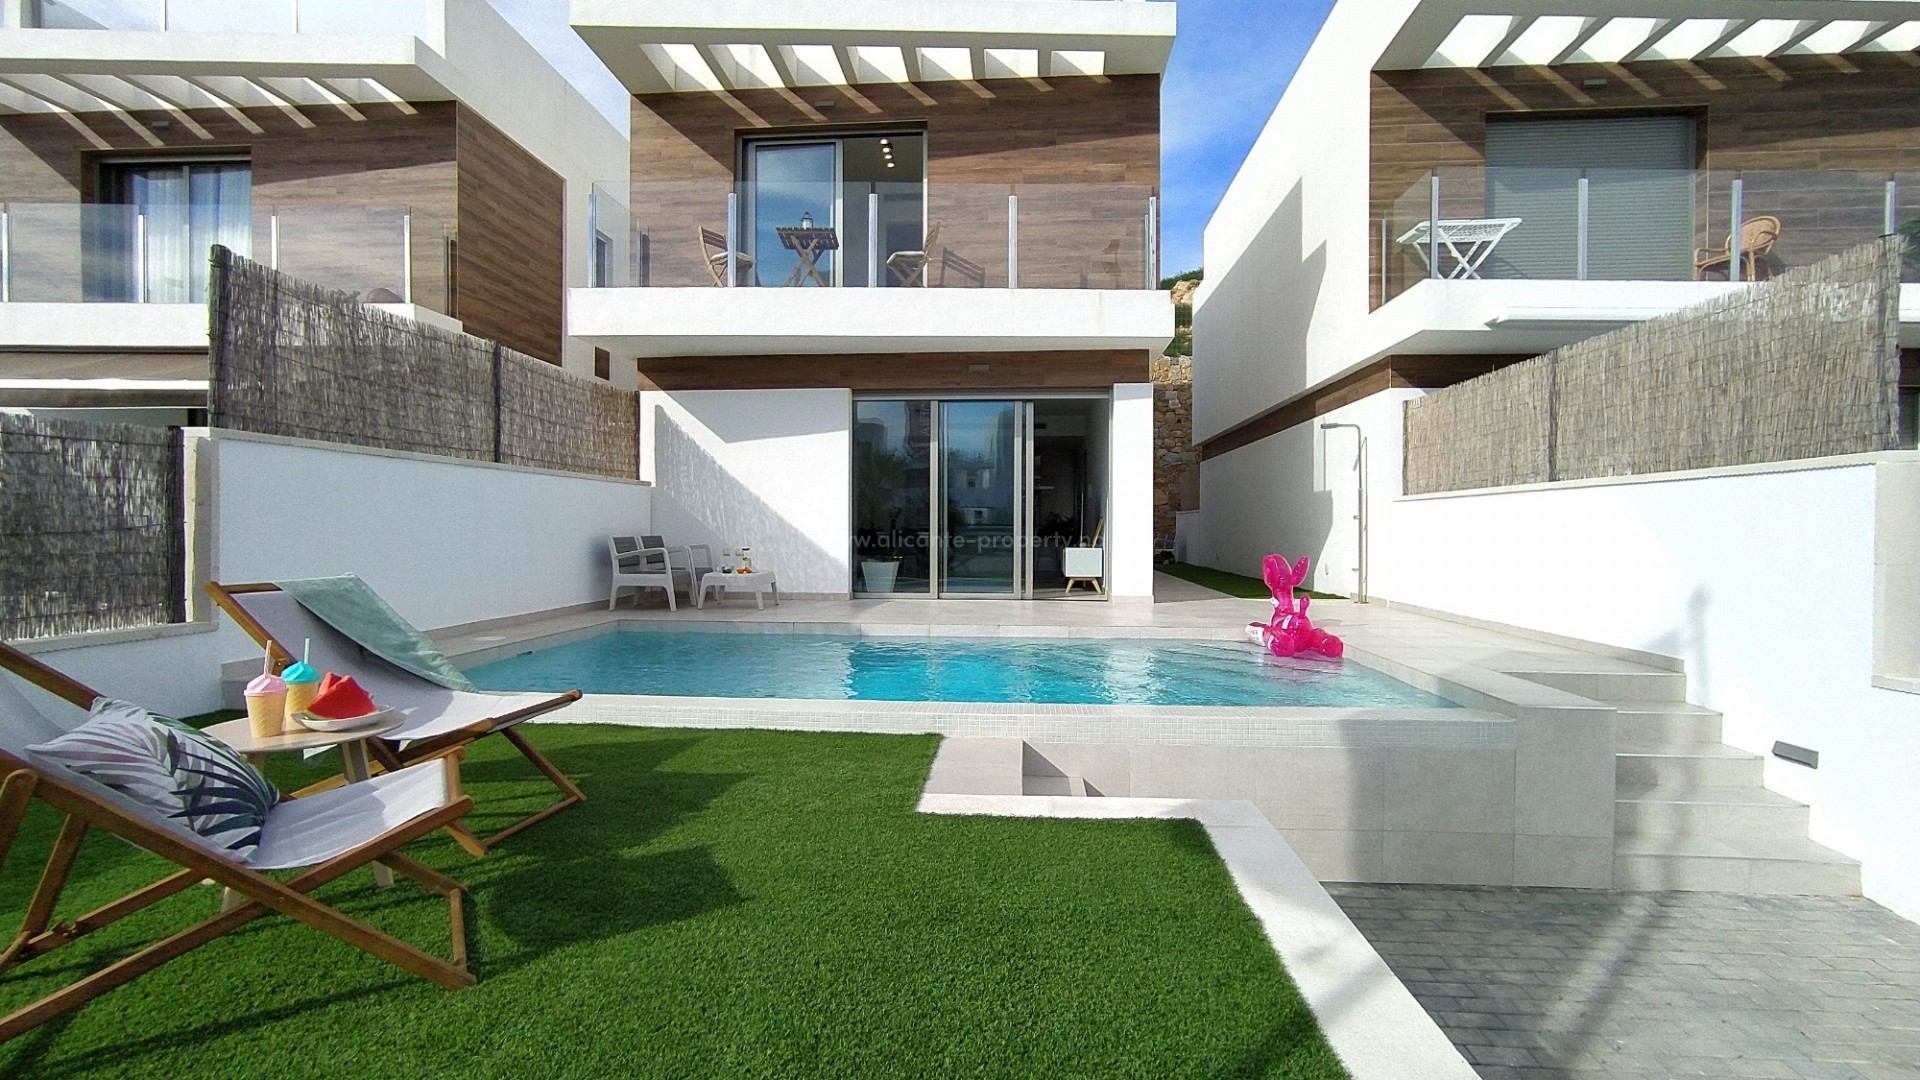 Fantstisk fine villa/hus med 3 soverom og 3 bad i Villamartin, 193 m2 basseng, solarium og hage med utsikt, 5 min til strender, 3 golfbaner i nærheten